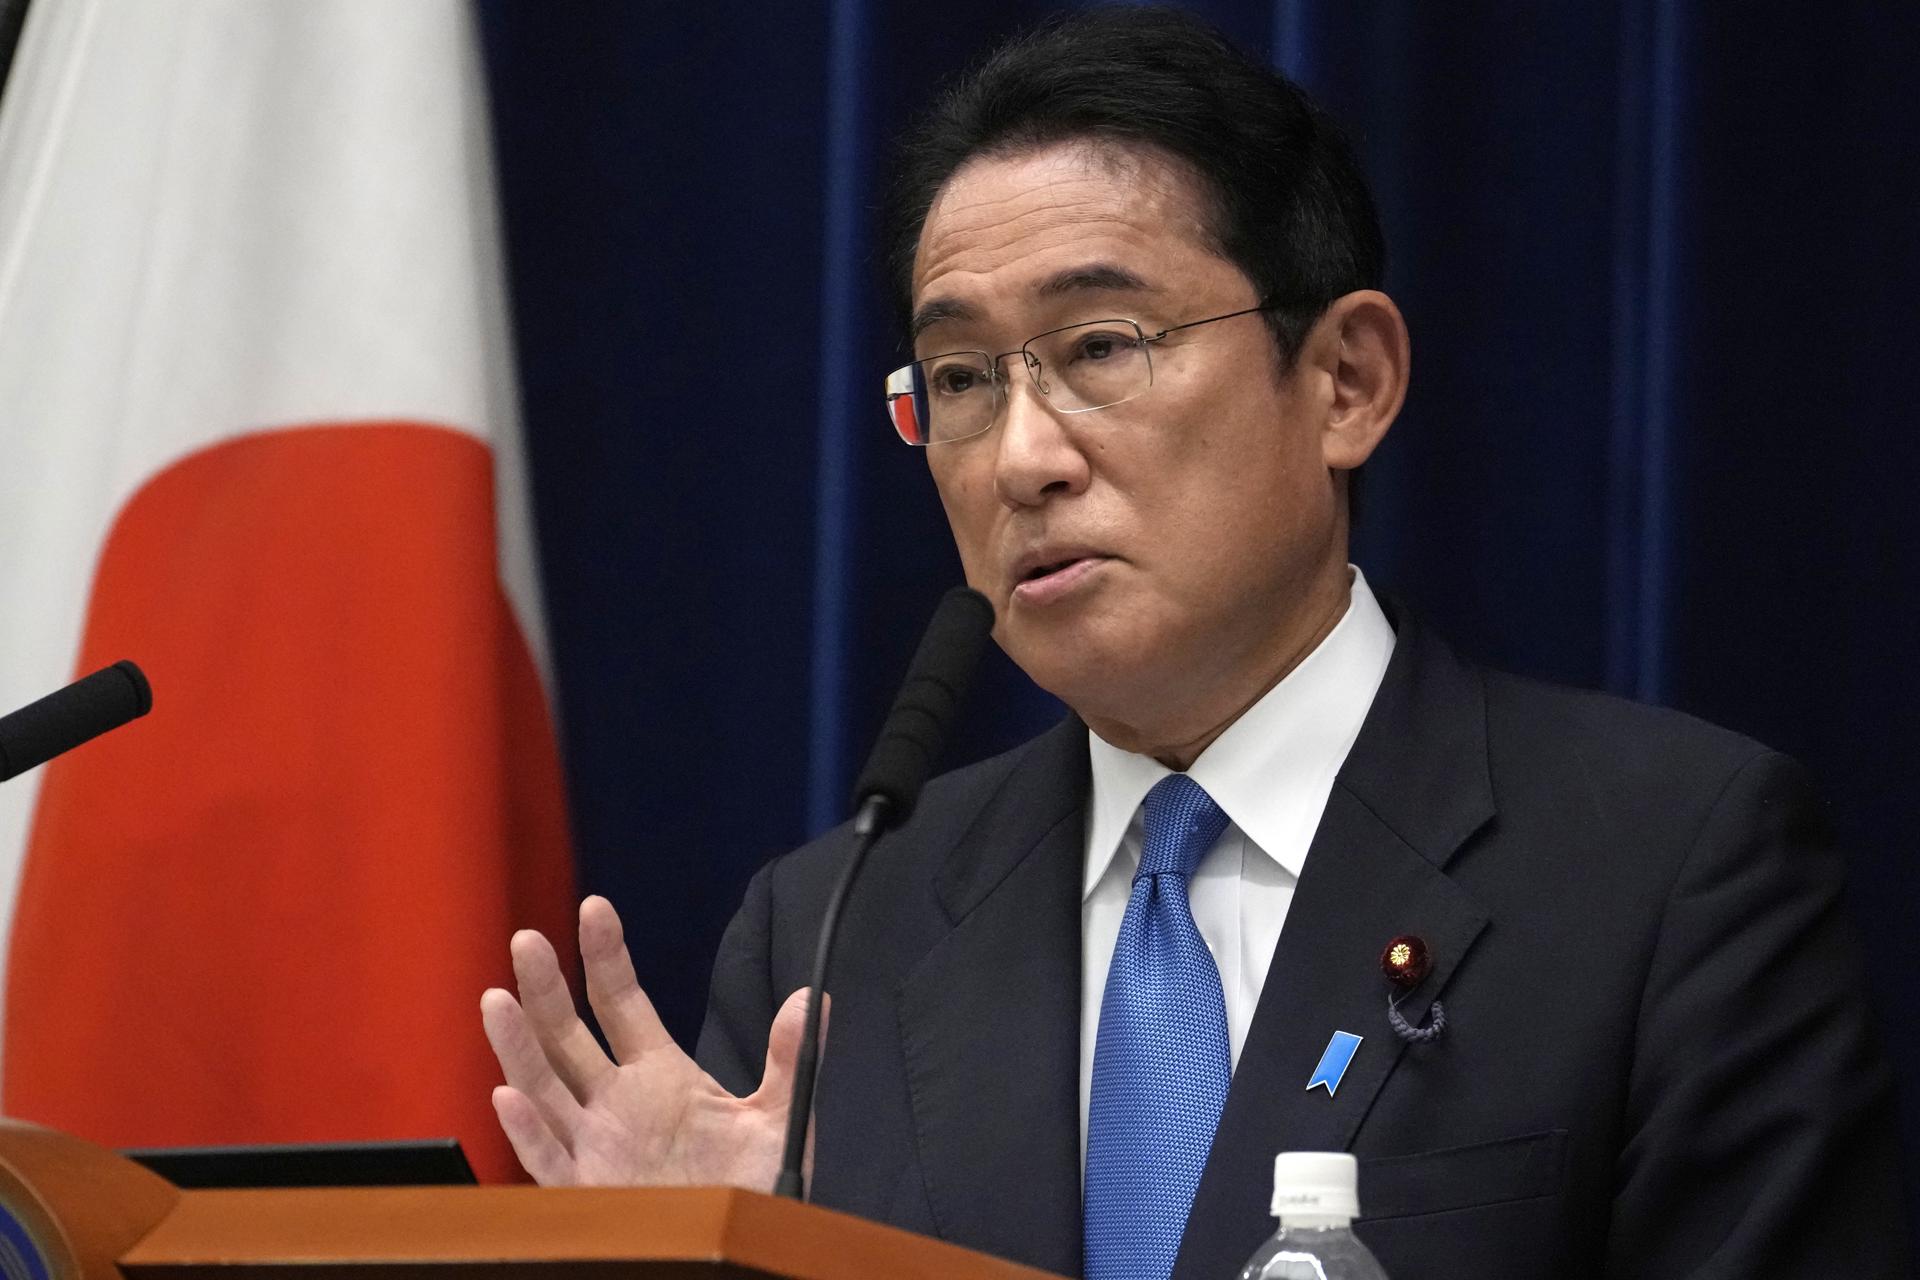 El sonido de una fuerte explosión obligó a evacuar al primer ministro japonés